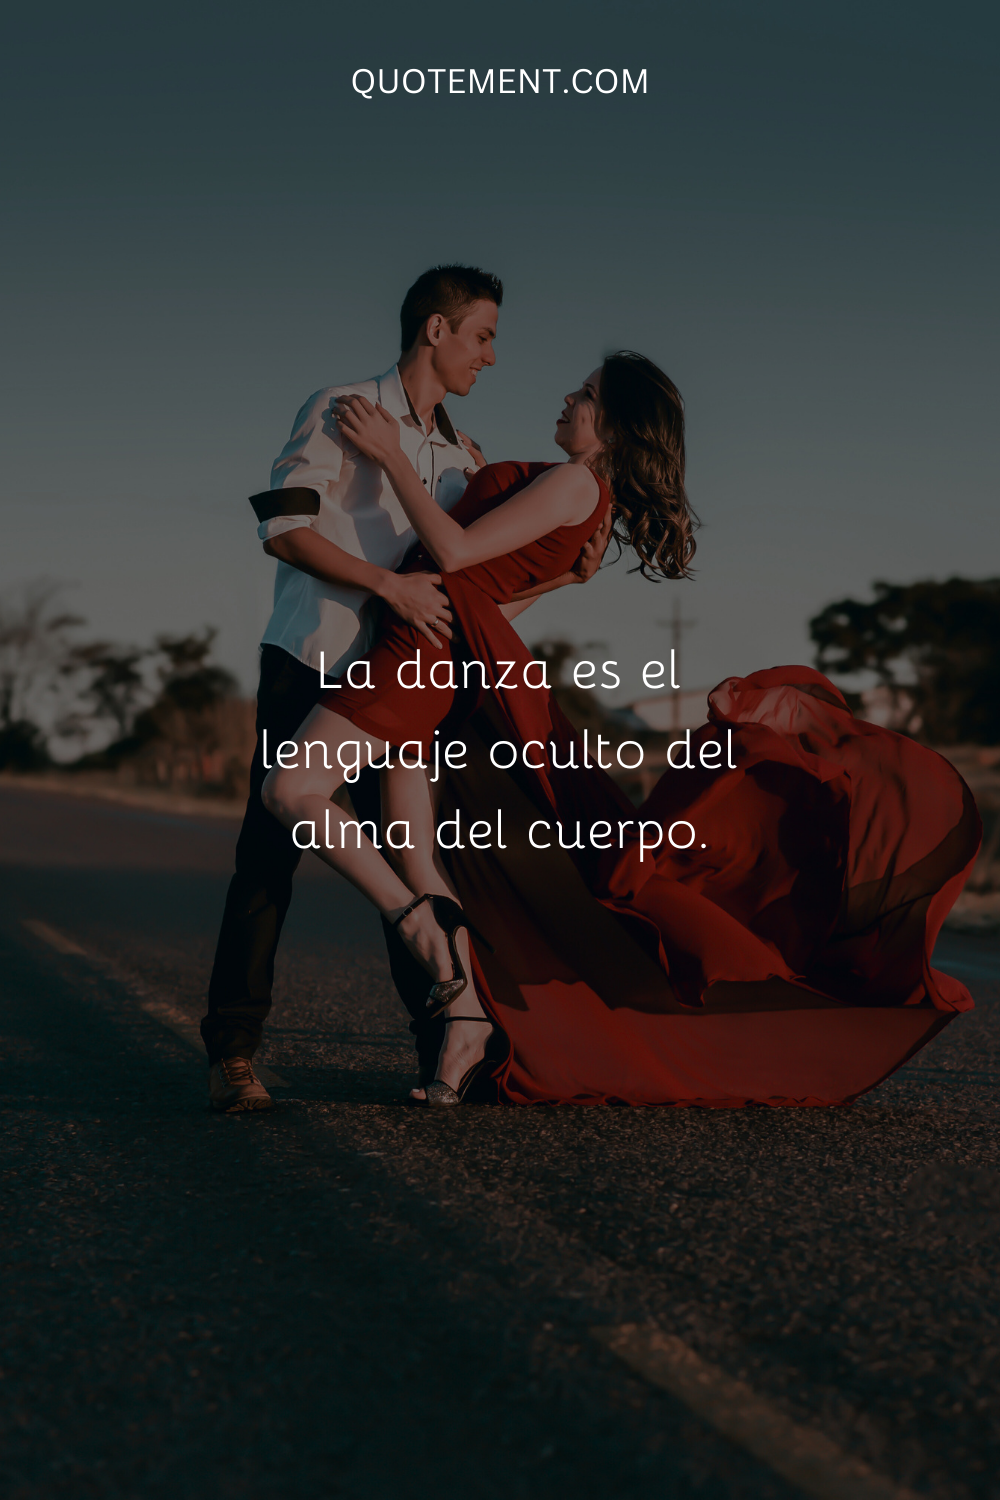 La danza es el lenguaje oculto del alma del cuerpo